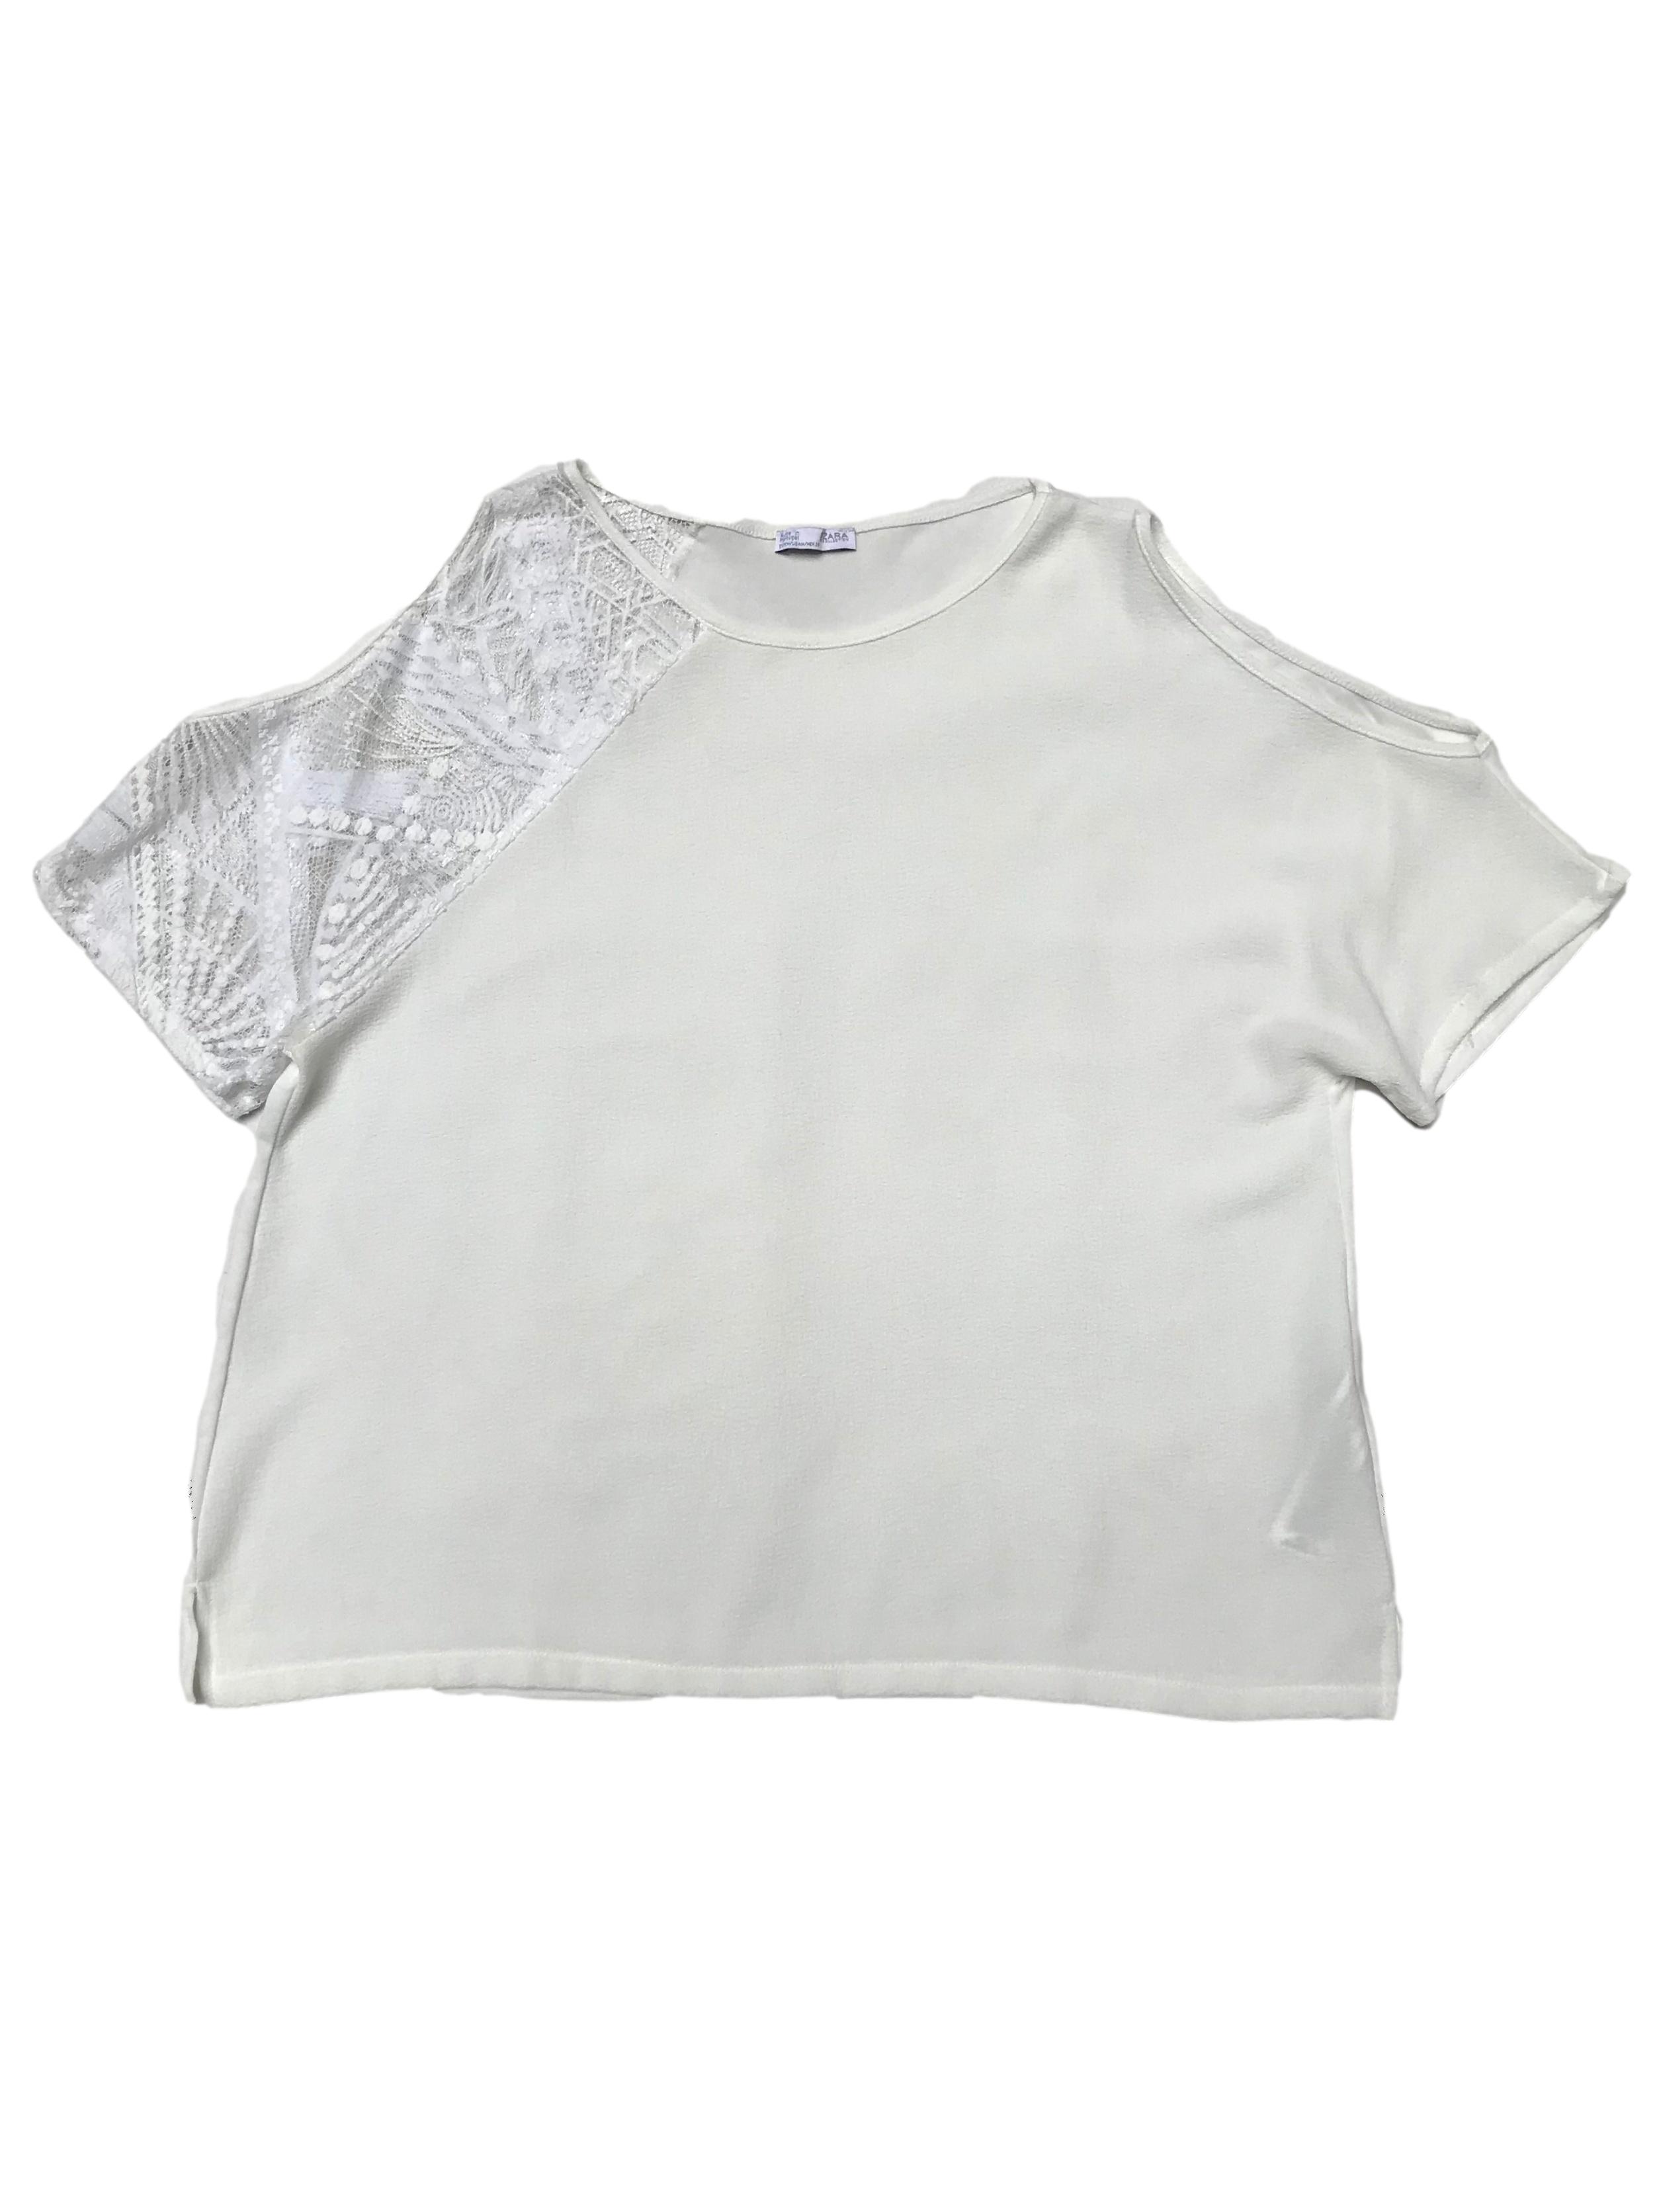 Blusa Zara tela plana texturada con encaje en un hombros y aberturas